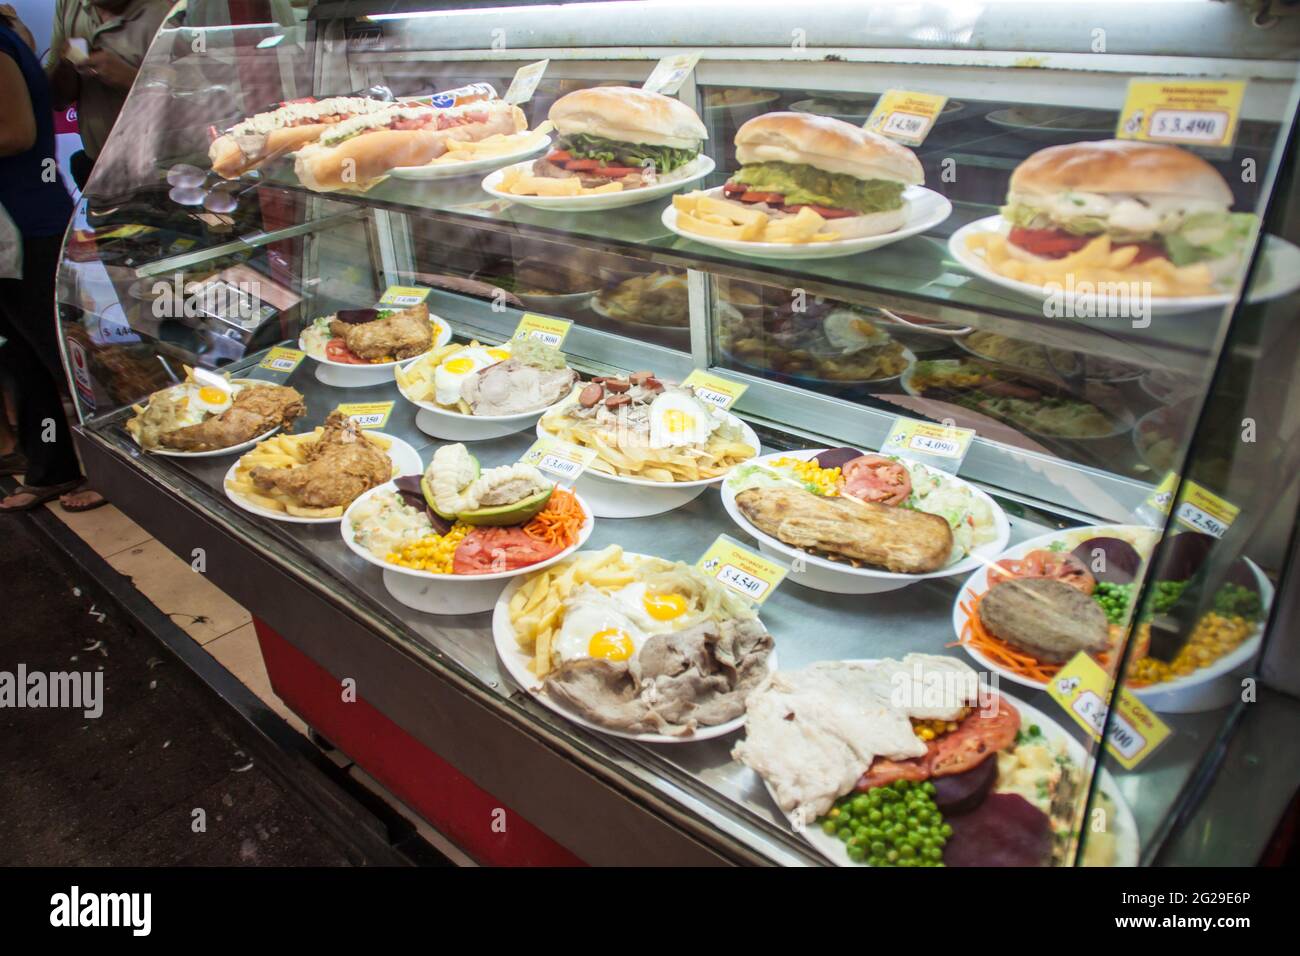 SANTIAGO, CHILE - 28. FEB 2015: Mahlzeiten werden in einem Restaurant im Stadtzentrum von Santiago de Chile ausgestellt Stockfoto